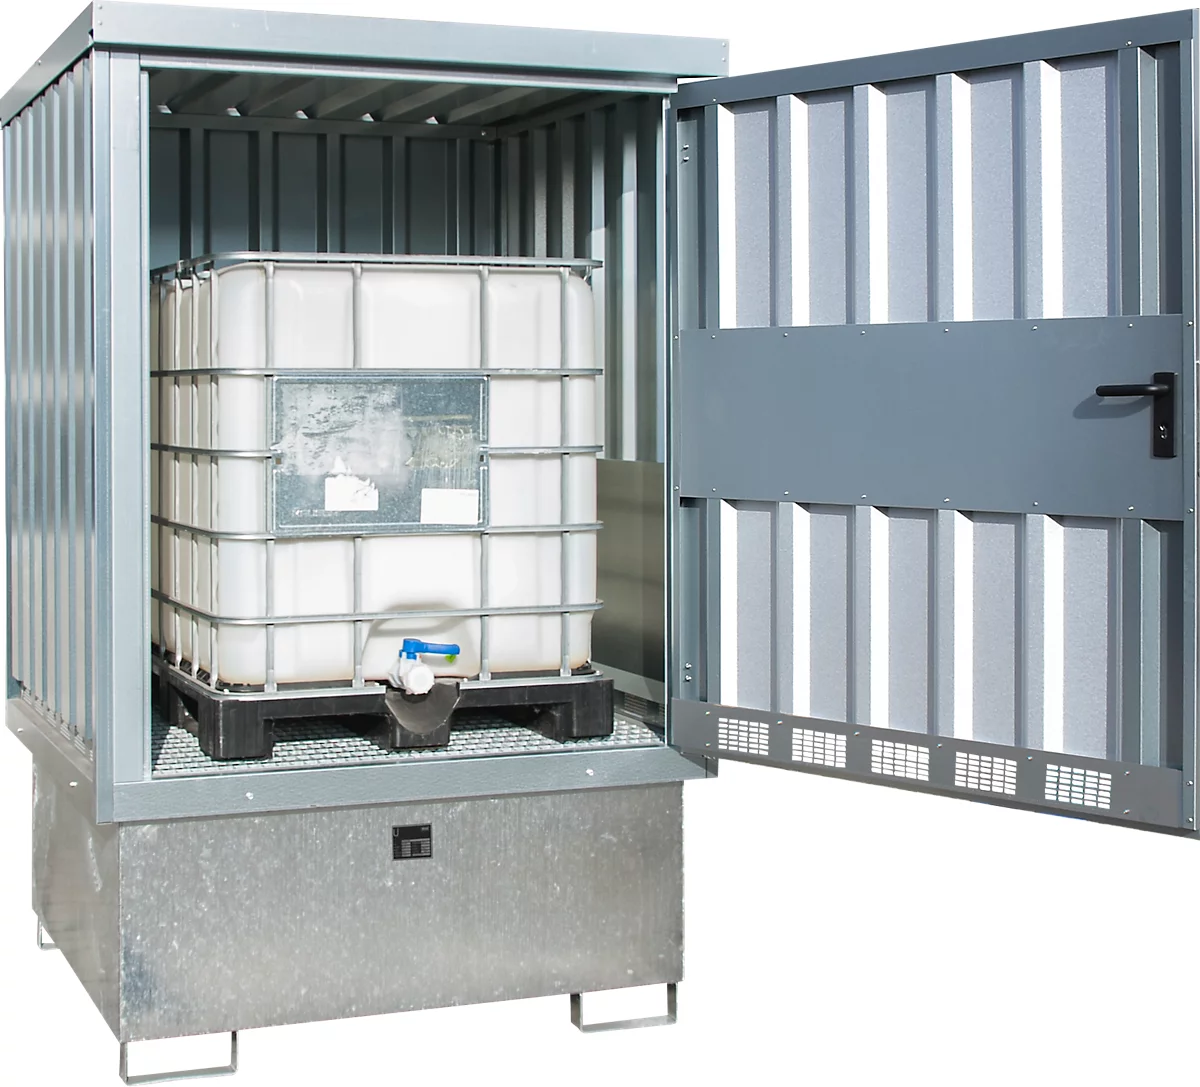 Depósito para materiales peligrosos tipo GD-E/IBC, con cerradura, capacidad de almacenamiento hasta 1 IBC de 1000 l, galvanizado